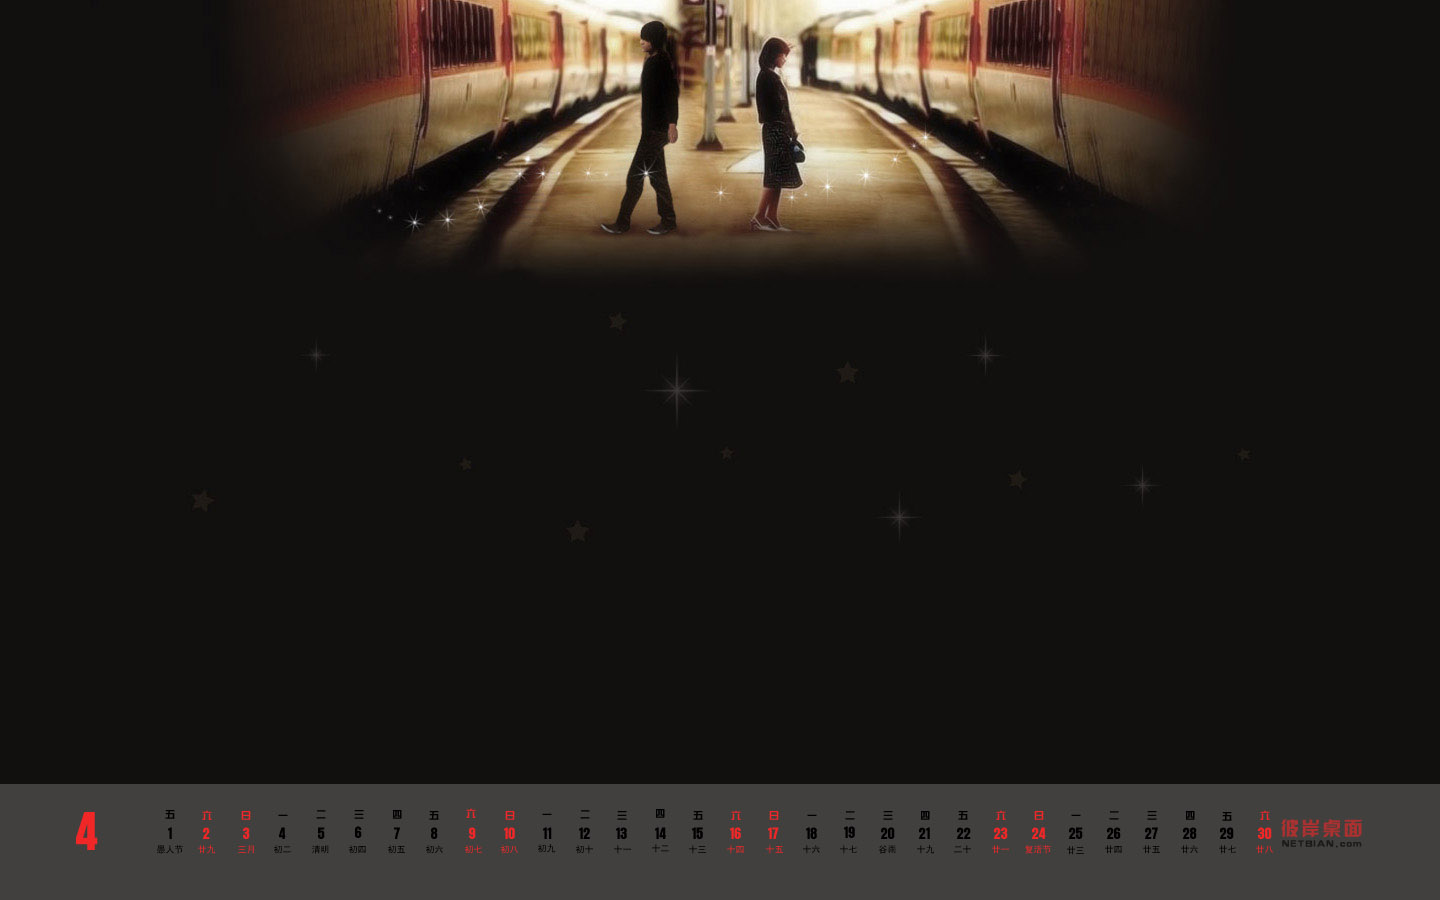 Our back to back, April 2011 calendar desktop wallpaper